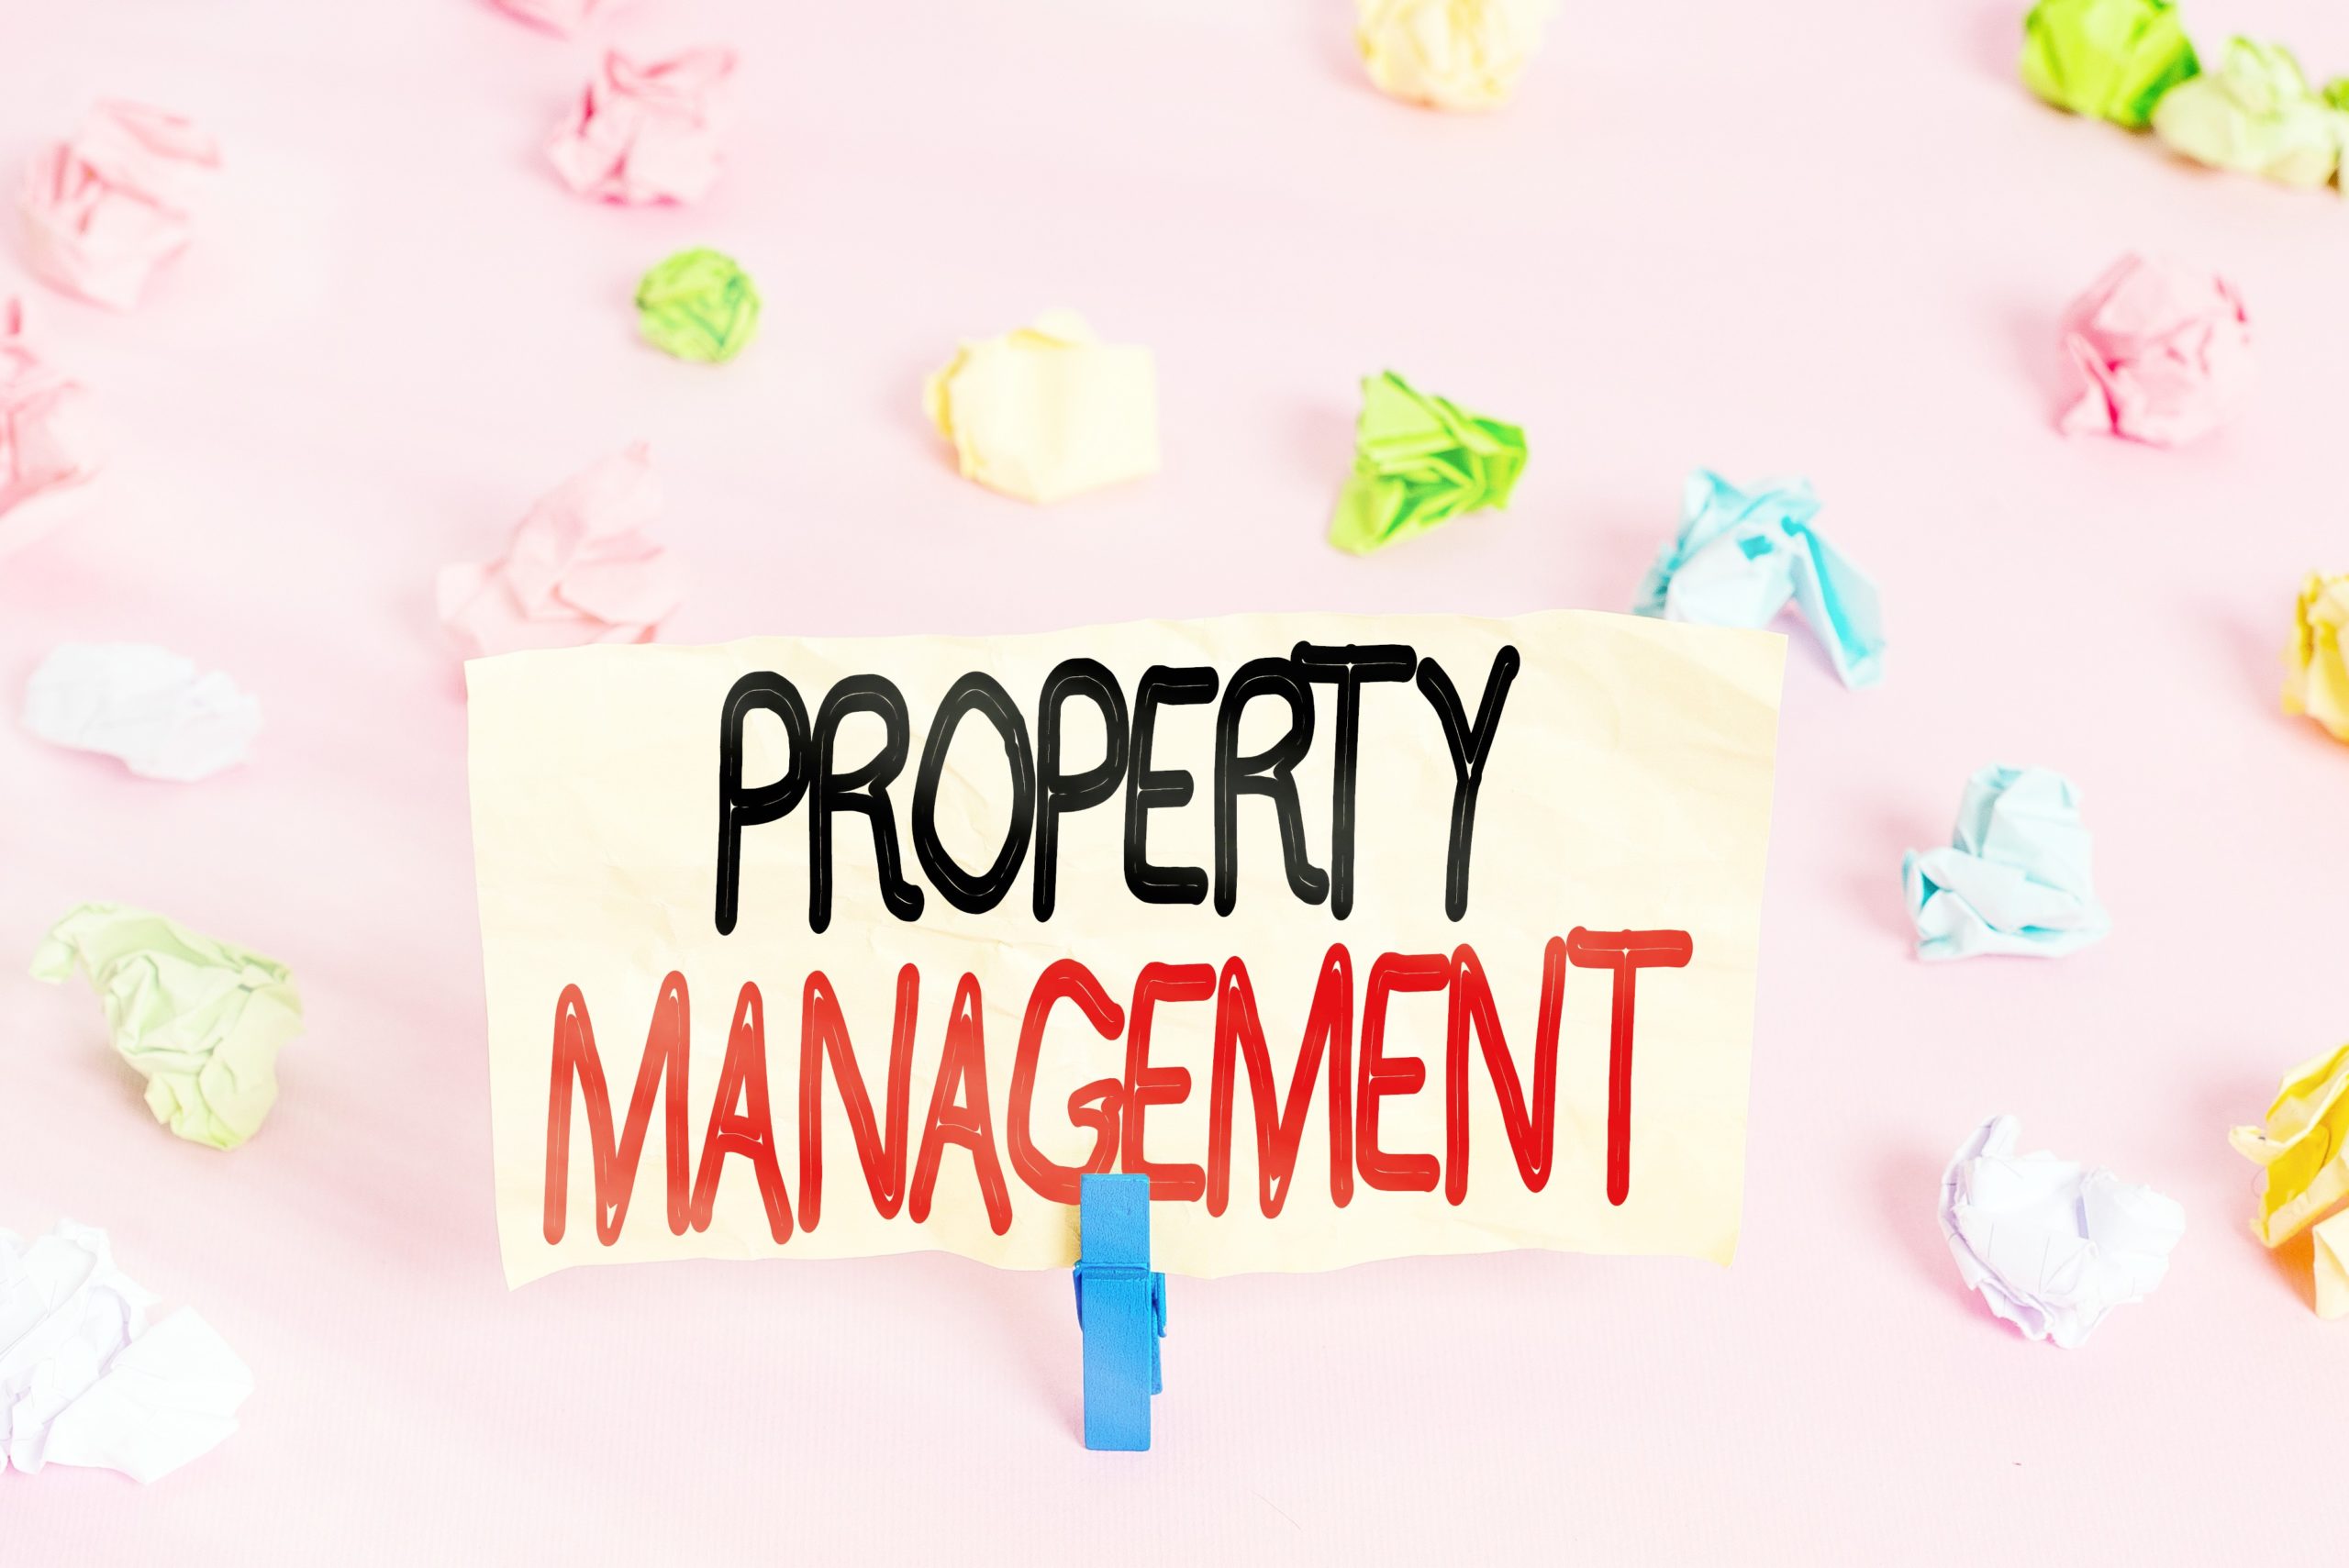 <img src="property.jpg" alt="property management first time landlords"/> 